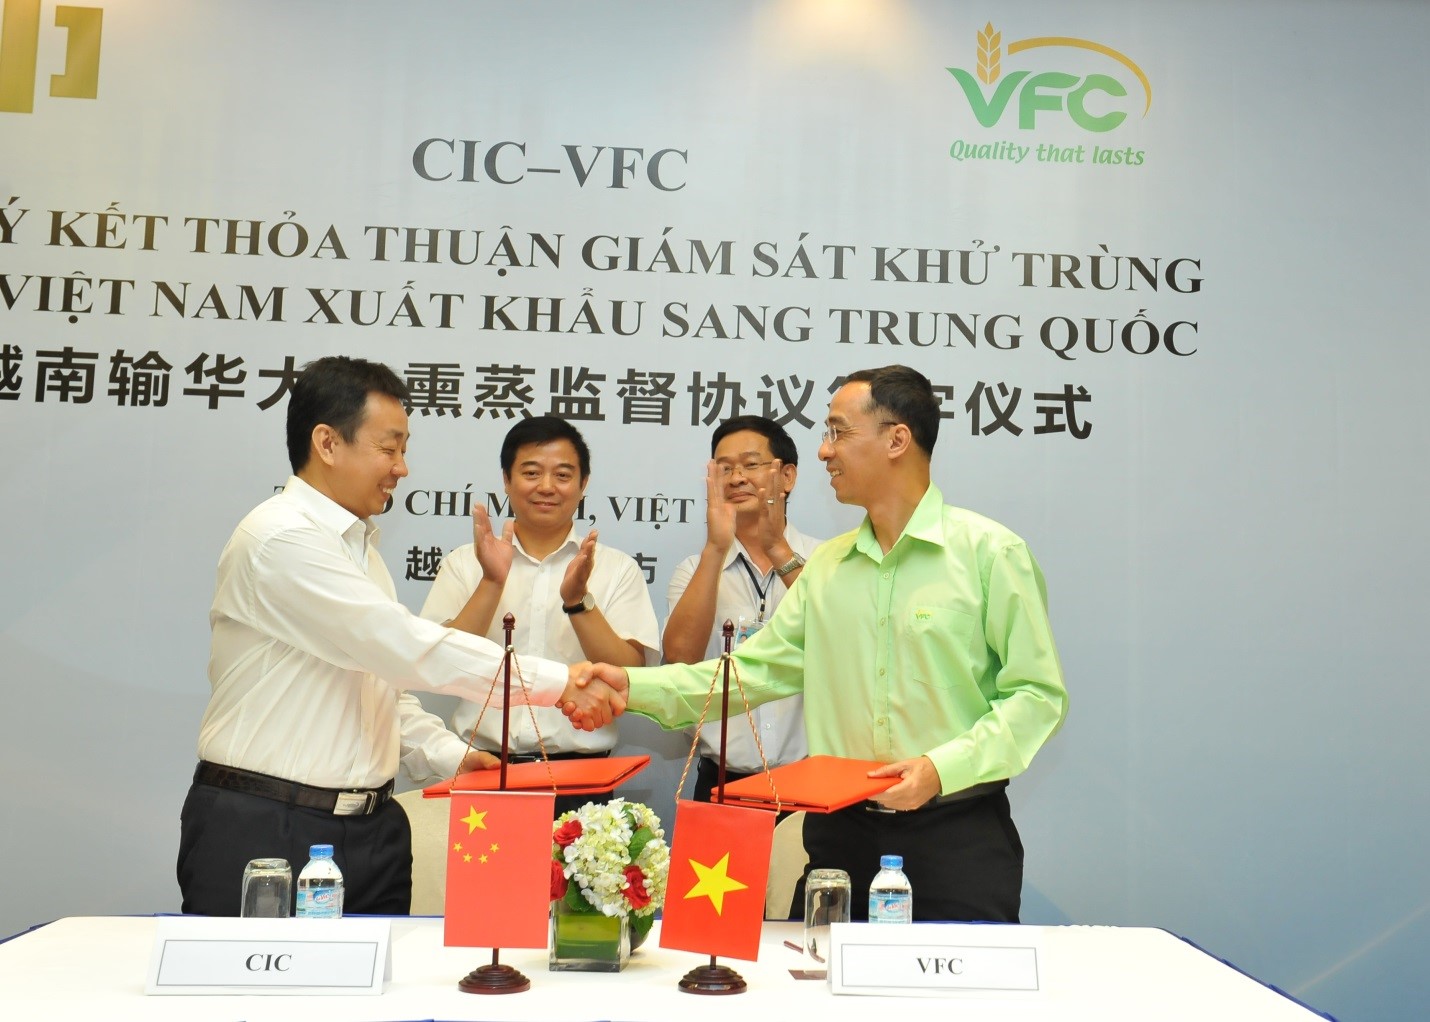 VFC và CIC ký thỏa thuận giám sát khử trùng gạo Việt Nam xuất khẩu sang Trung Quốc